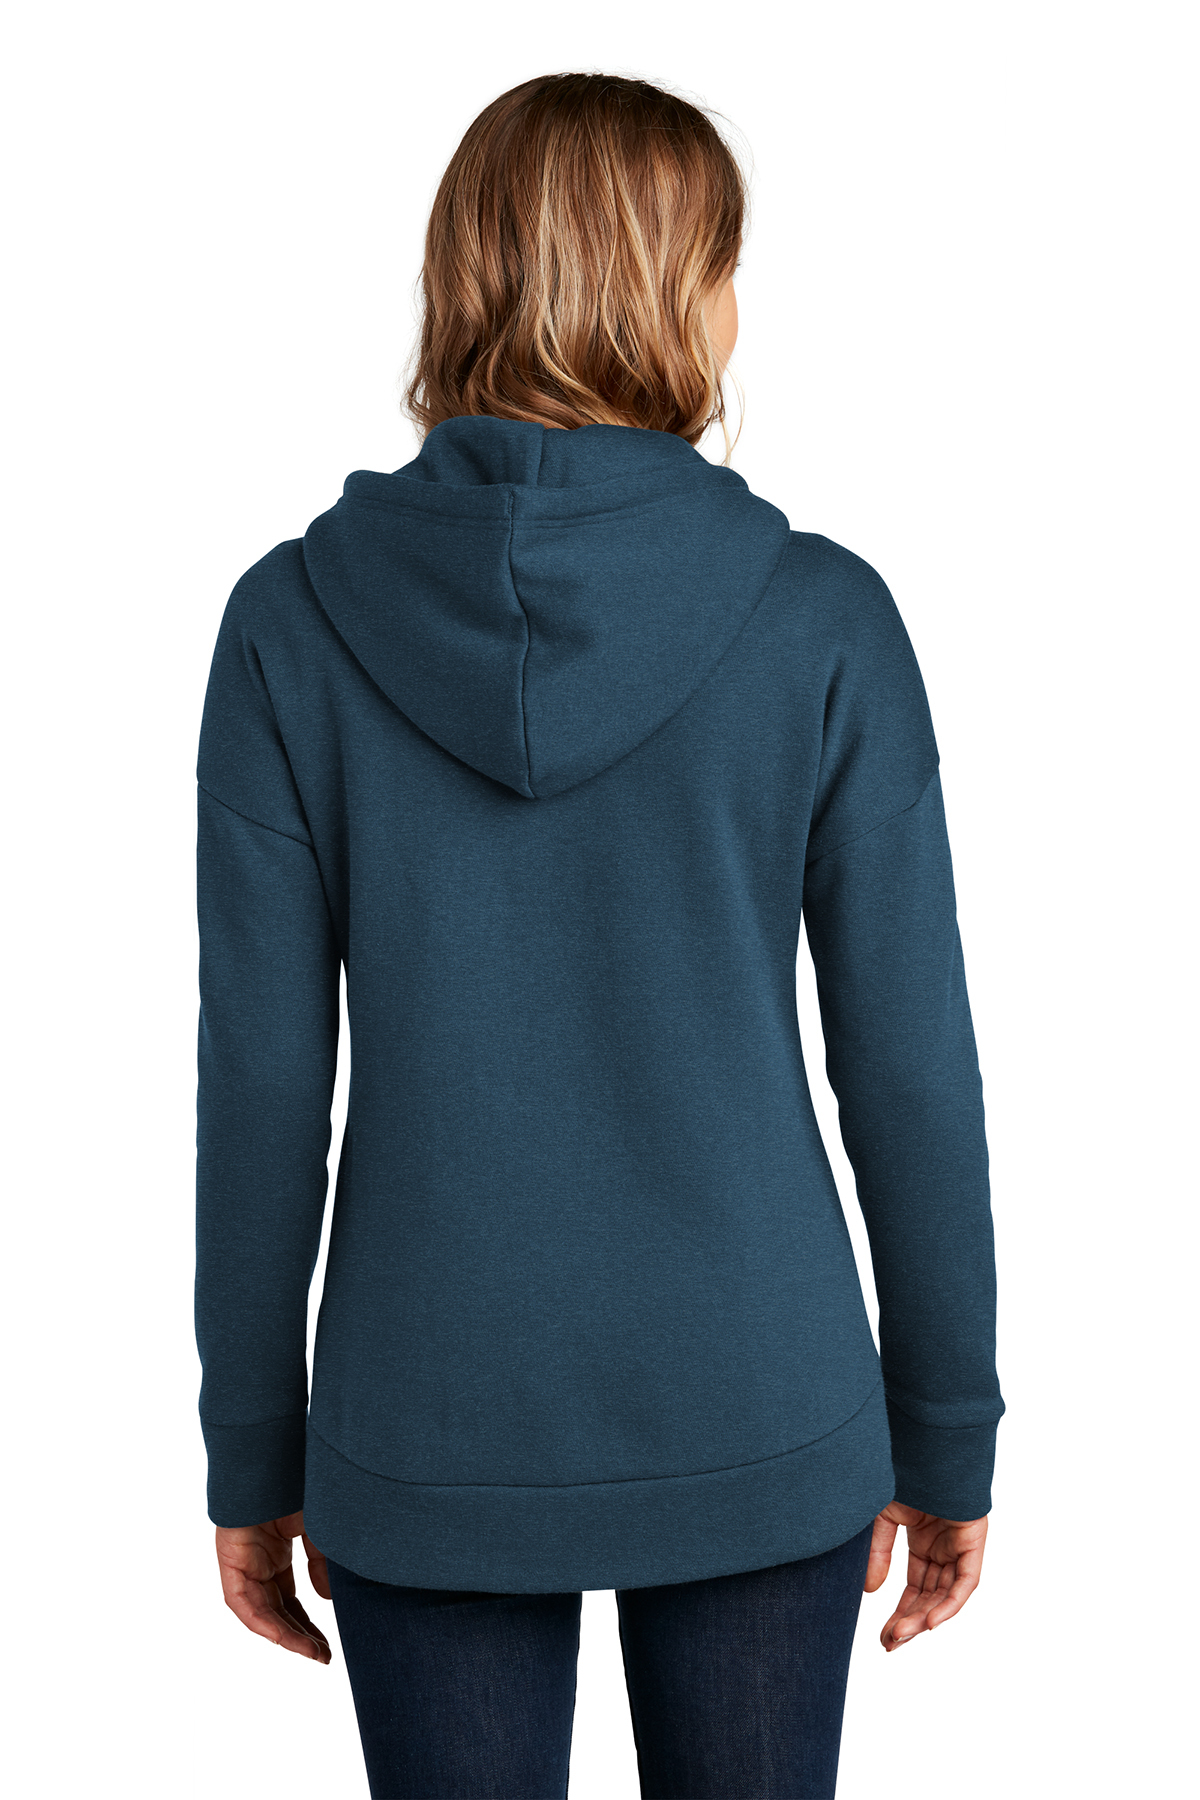 District Women's Perfect Weight Fleece Drop Shoulder Full-Zip Hoodie, Product